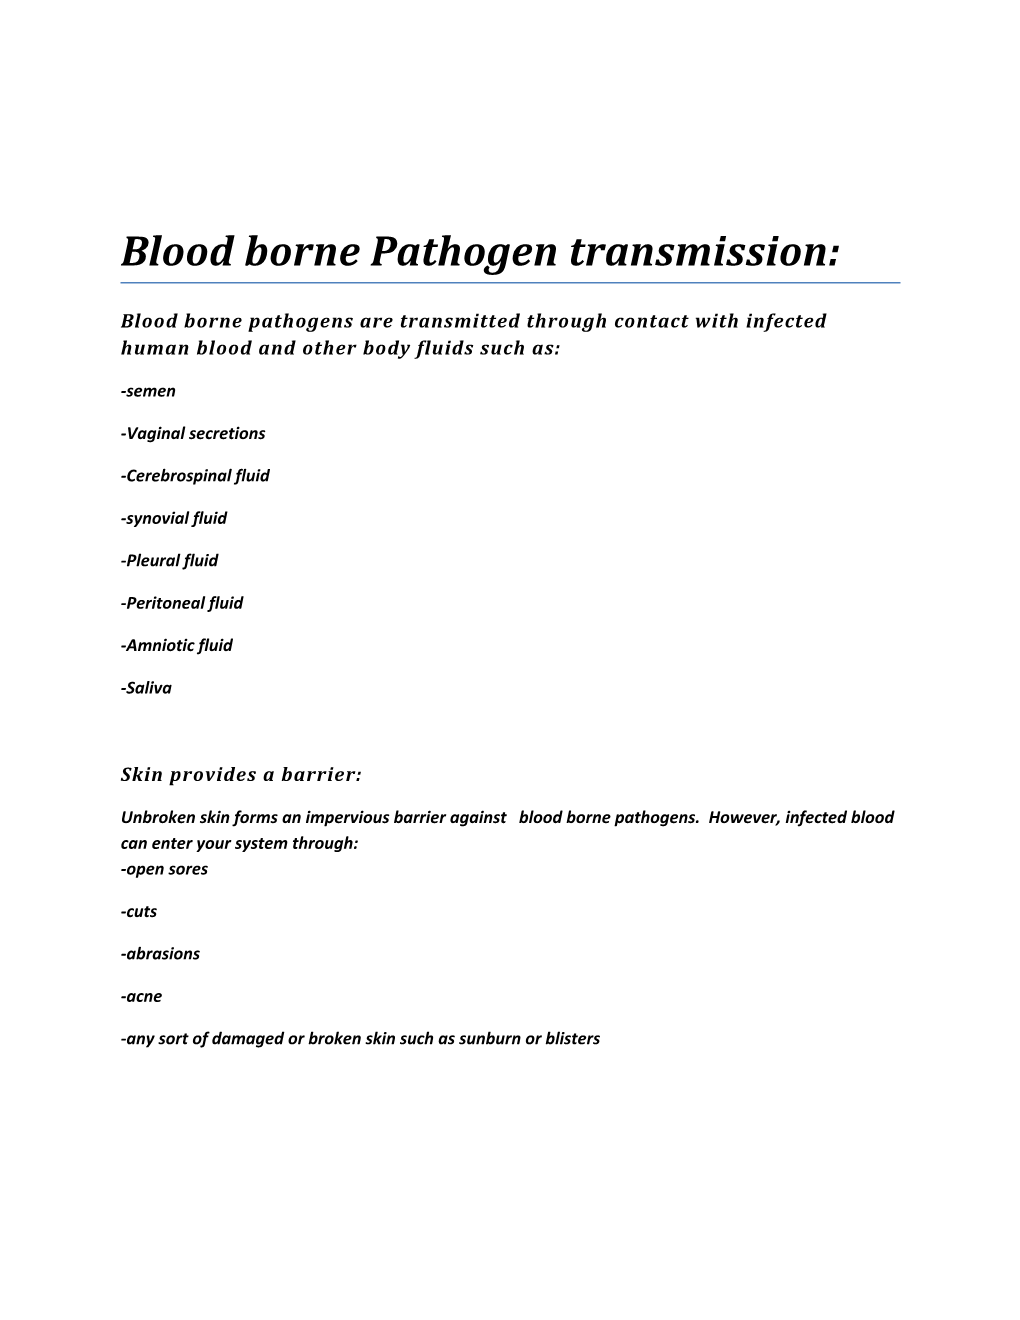 Types of Bloodborne Pathogens